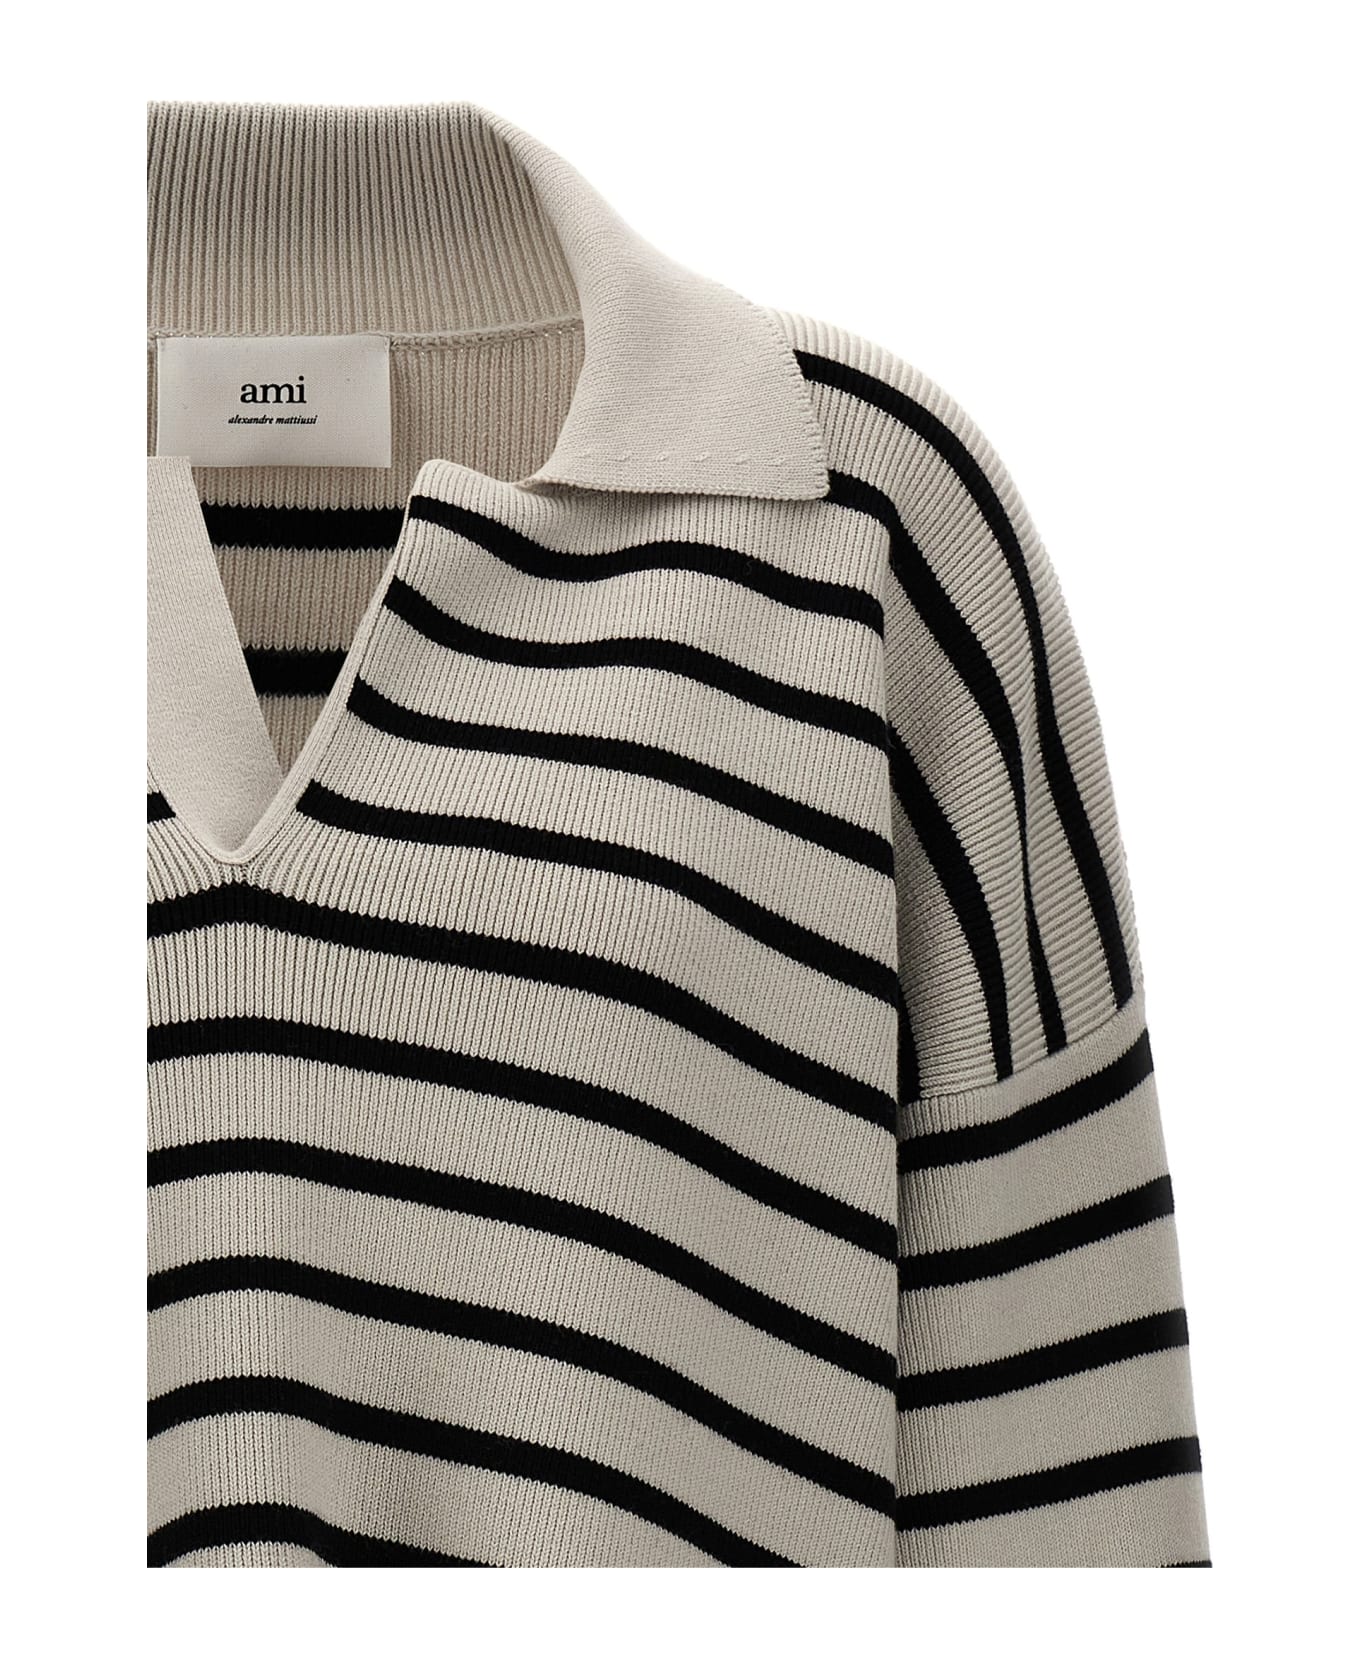 Ami Alexandre Mattiussi Striped Polo Sweater - White/Black ニットウェア